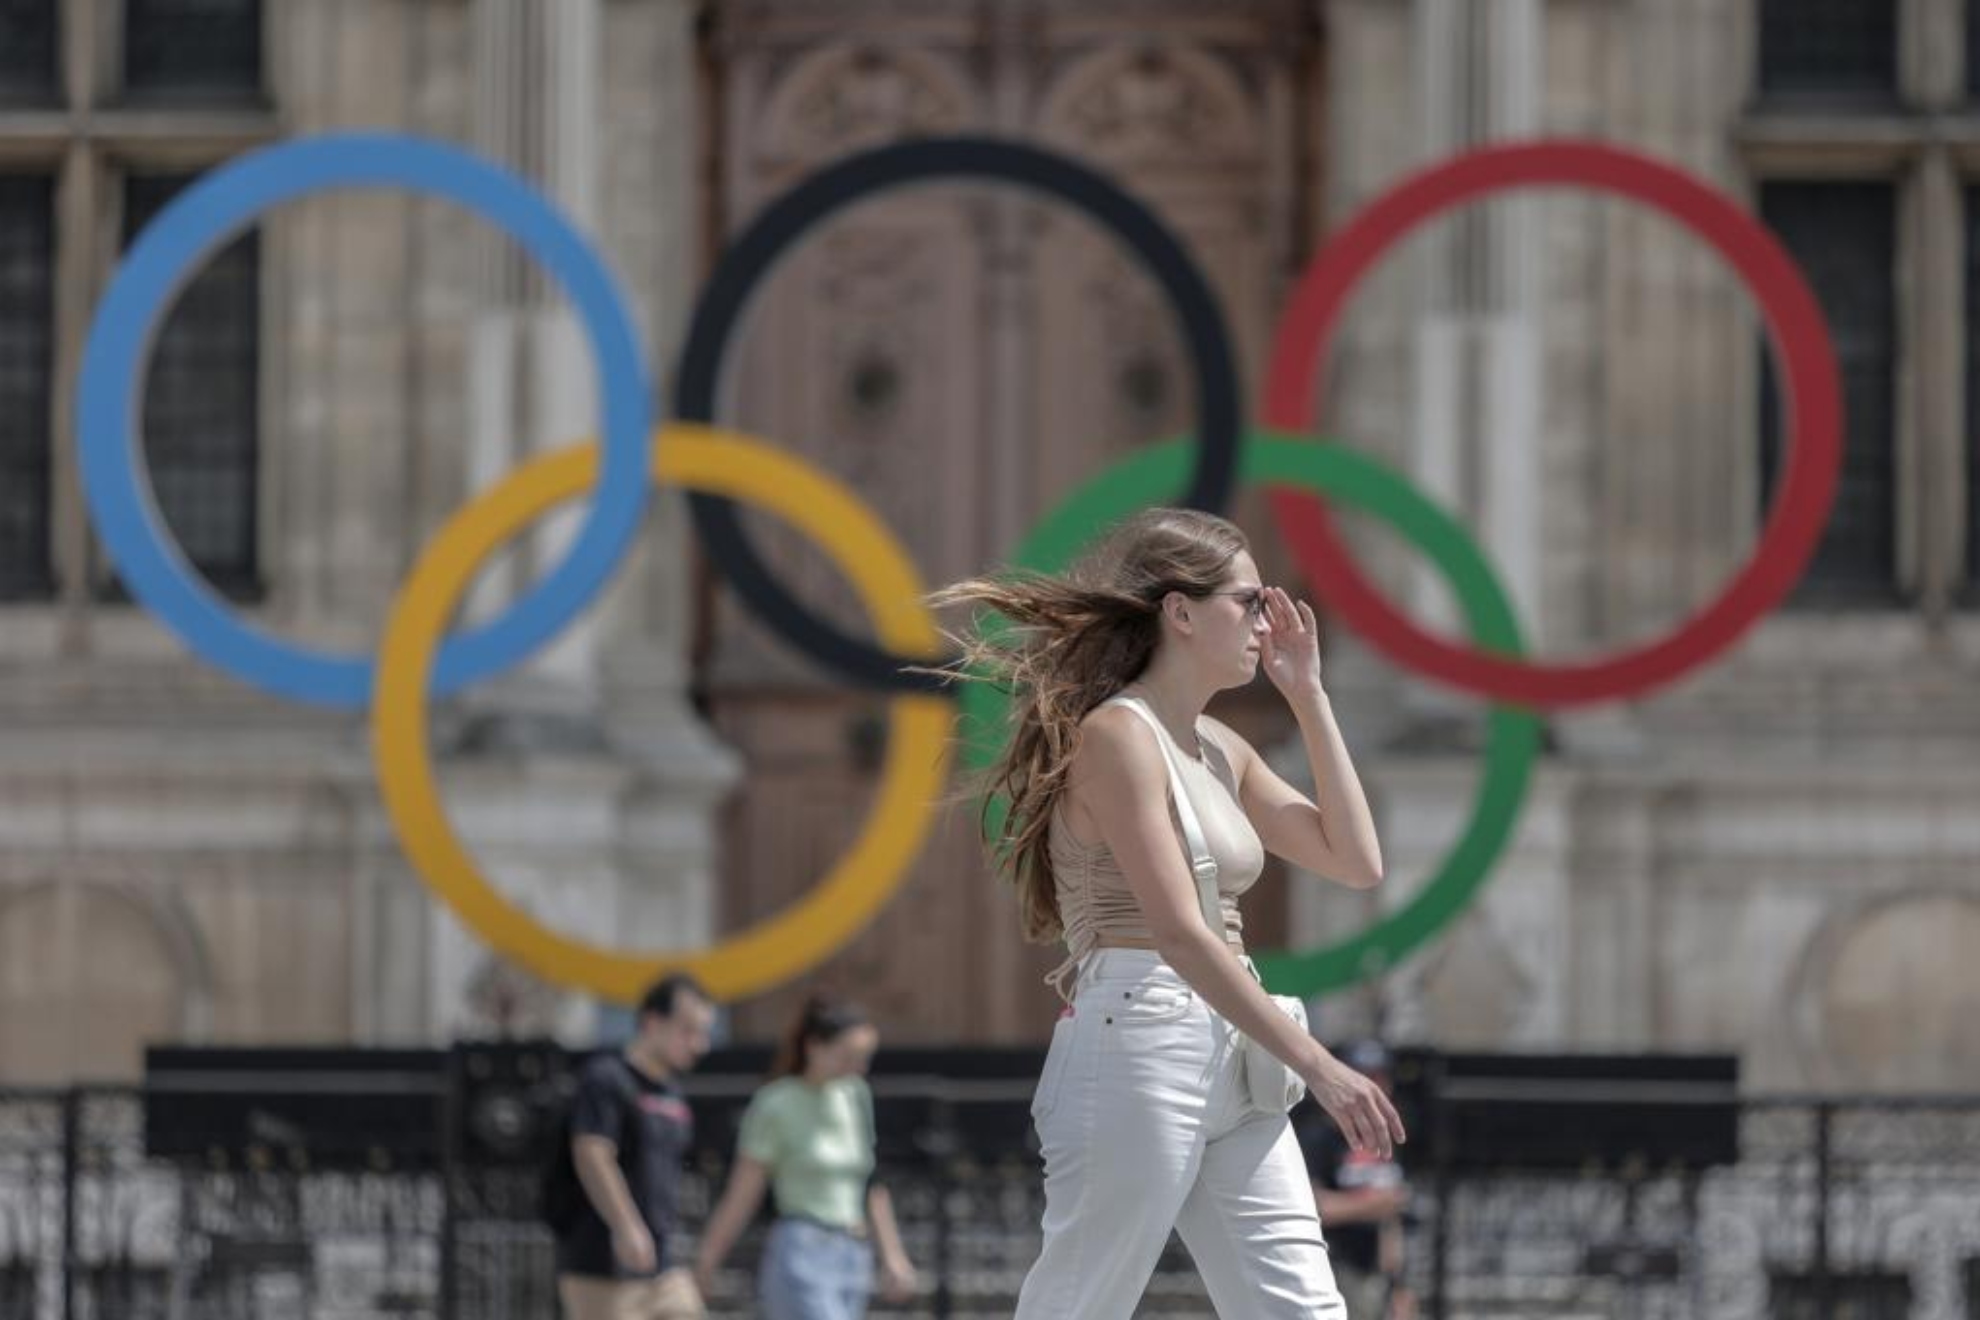 Una ciudadana pasea delante de los aros olímpicos en París